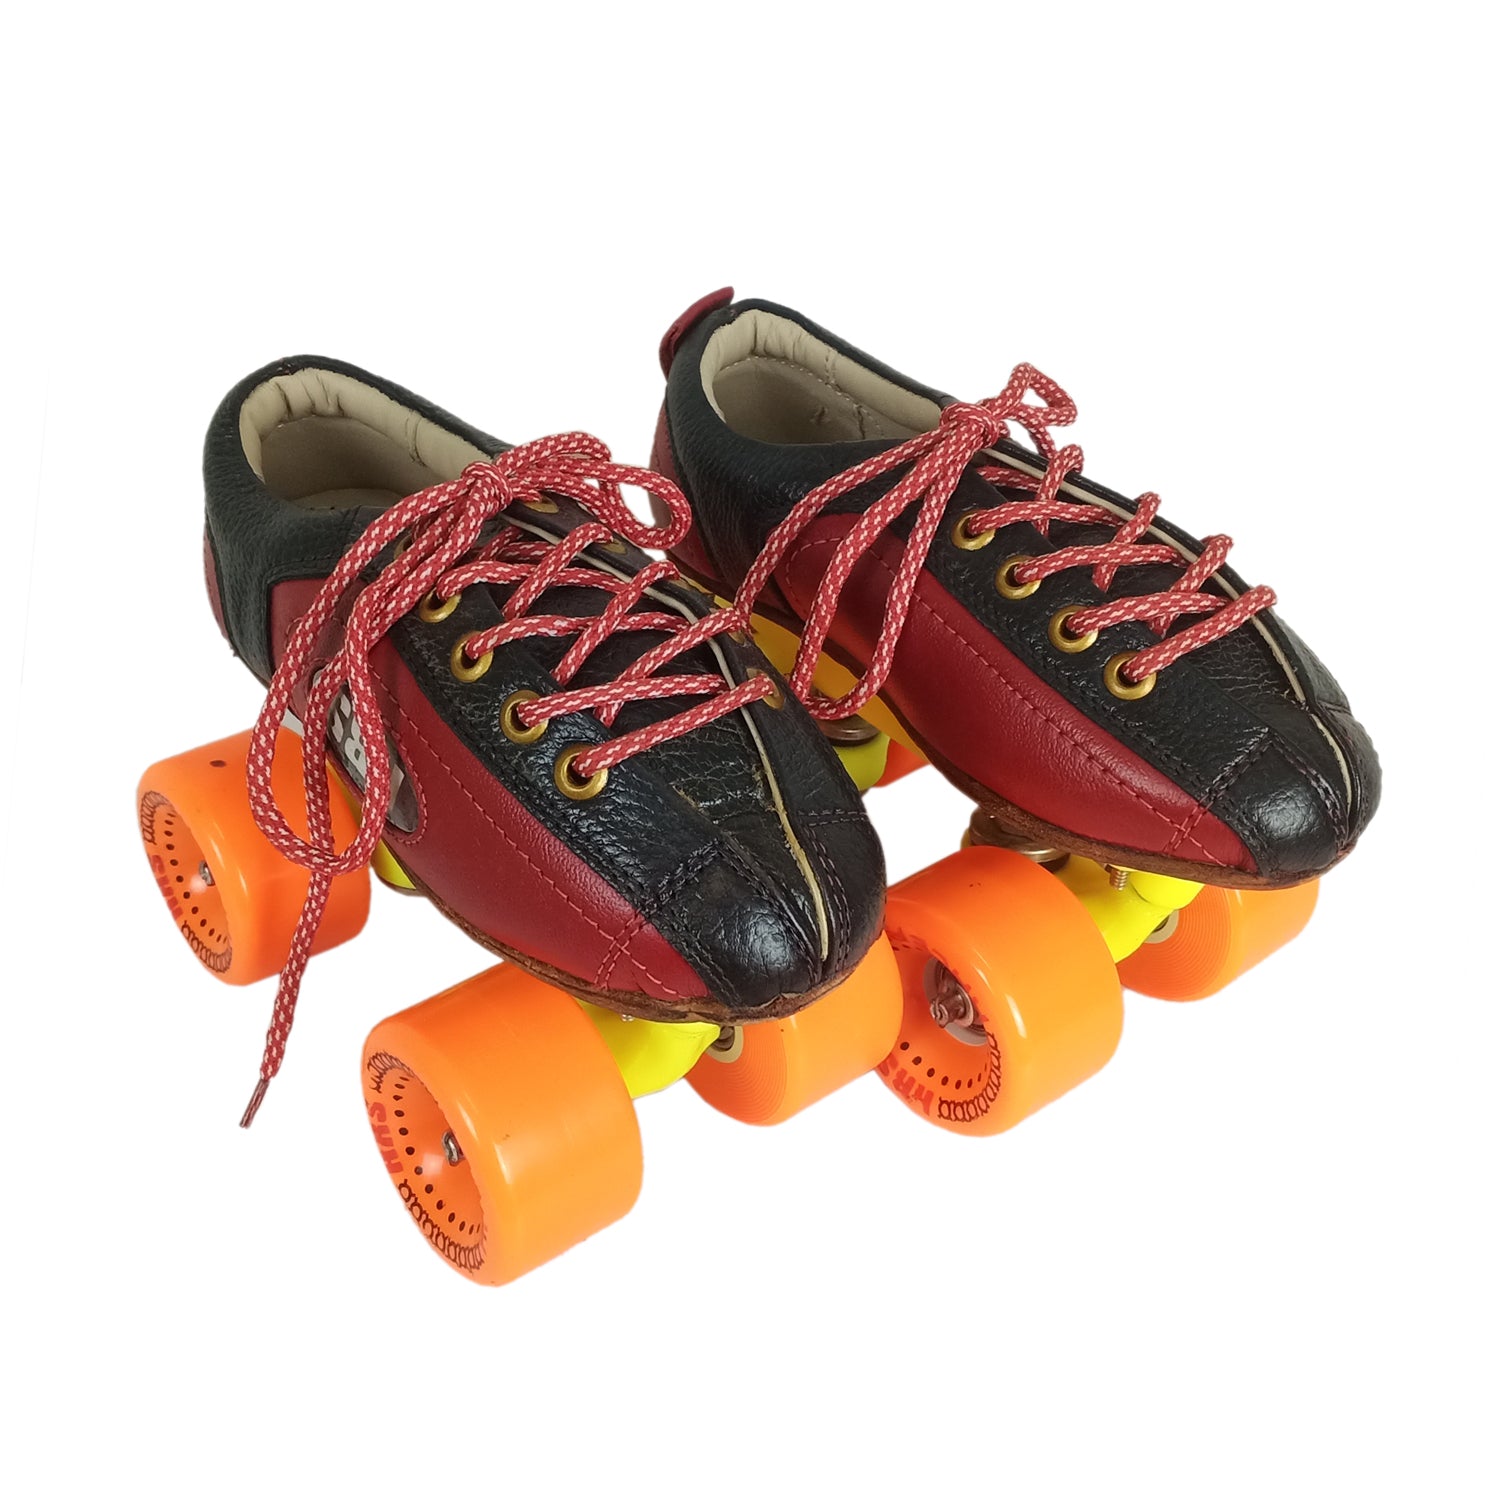 HRS SK-203 Racer Shoe Skates with Free Bag, Orange - Best Price online Prokicksports.com